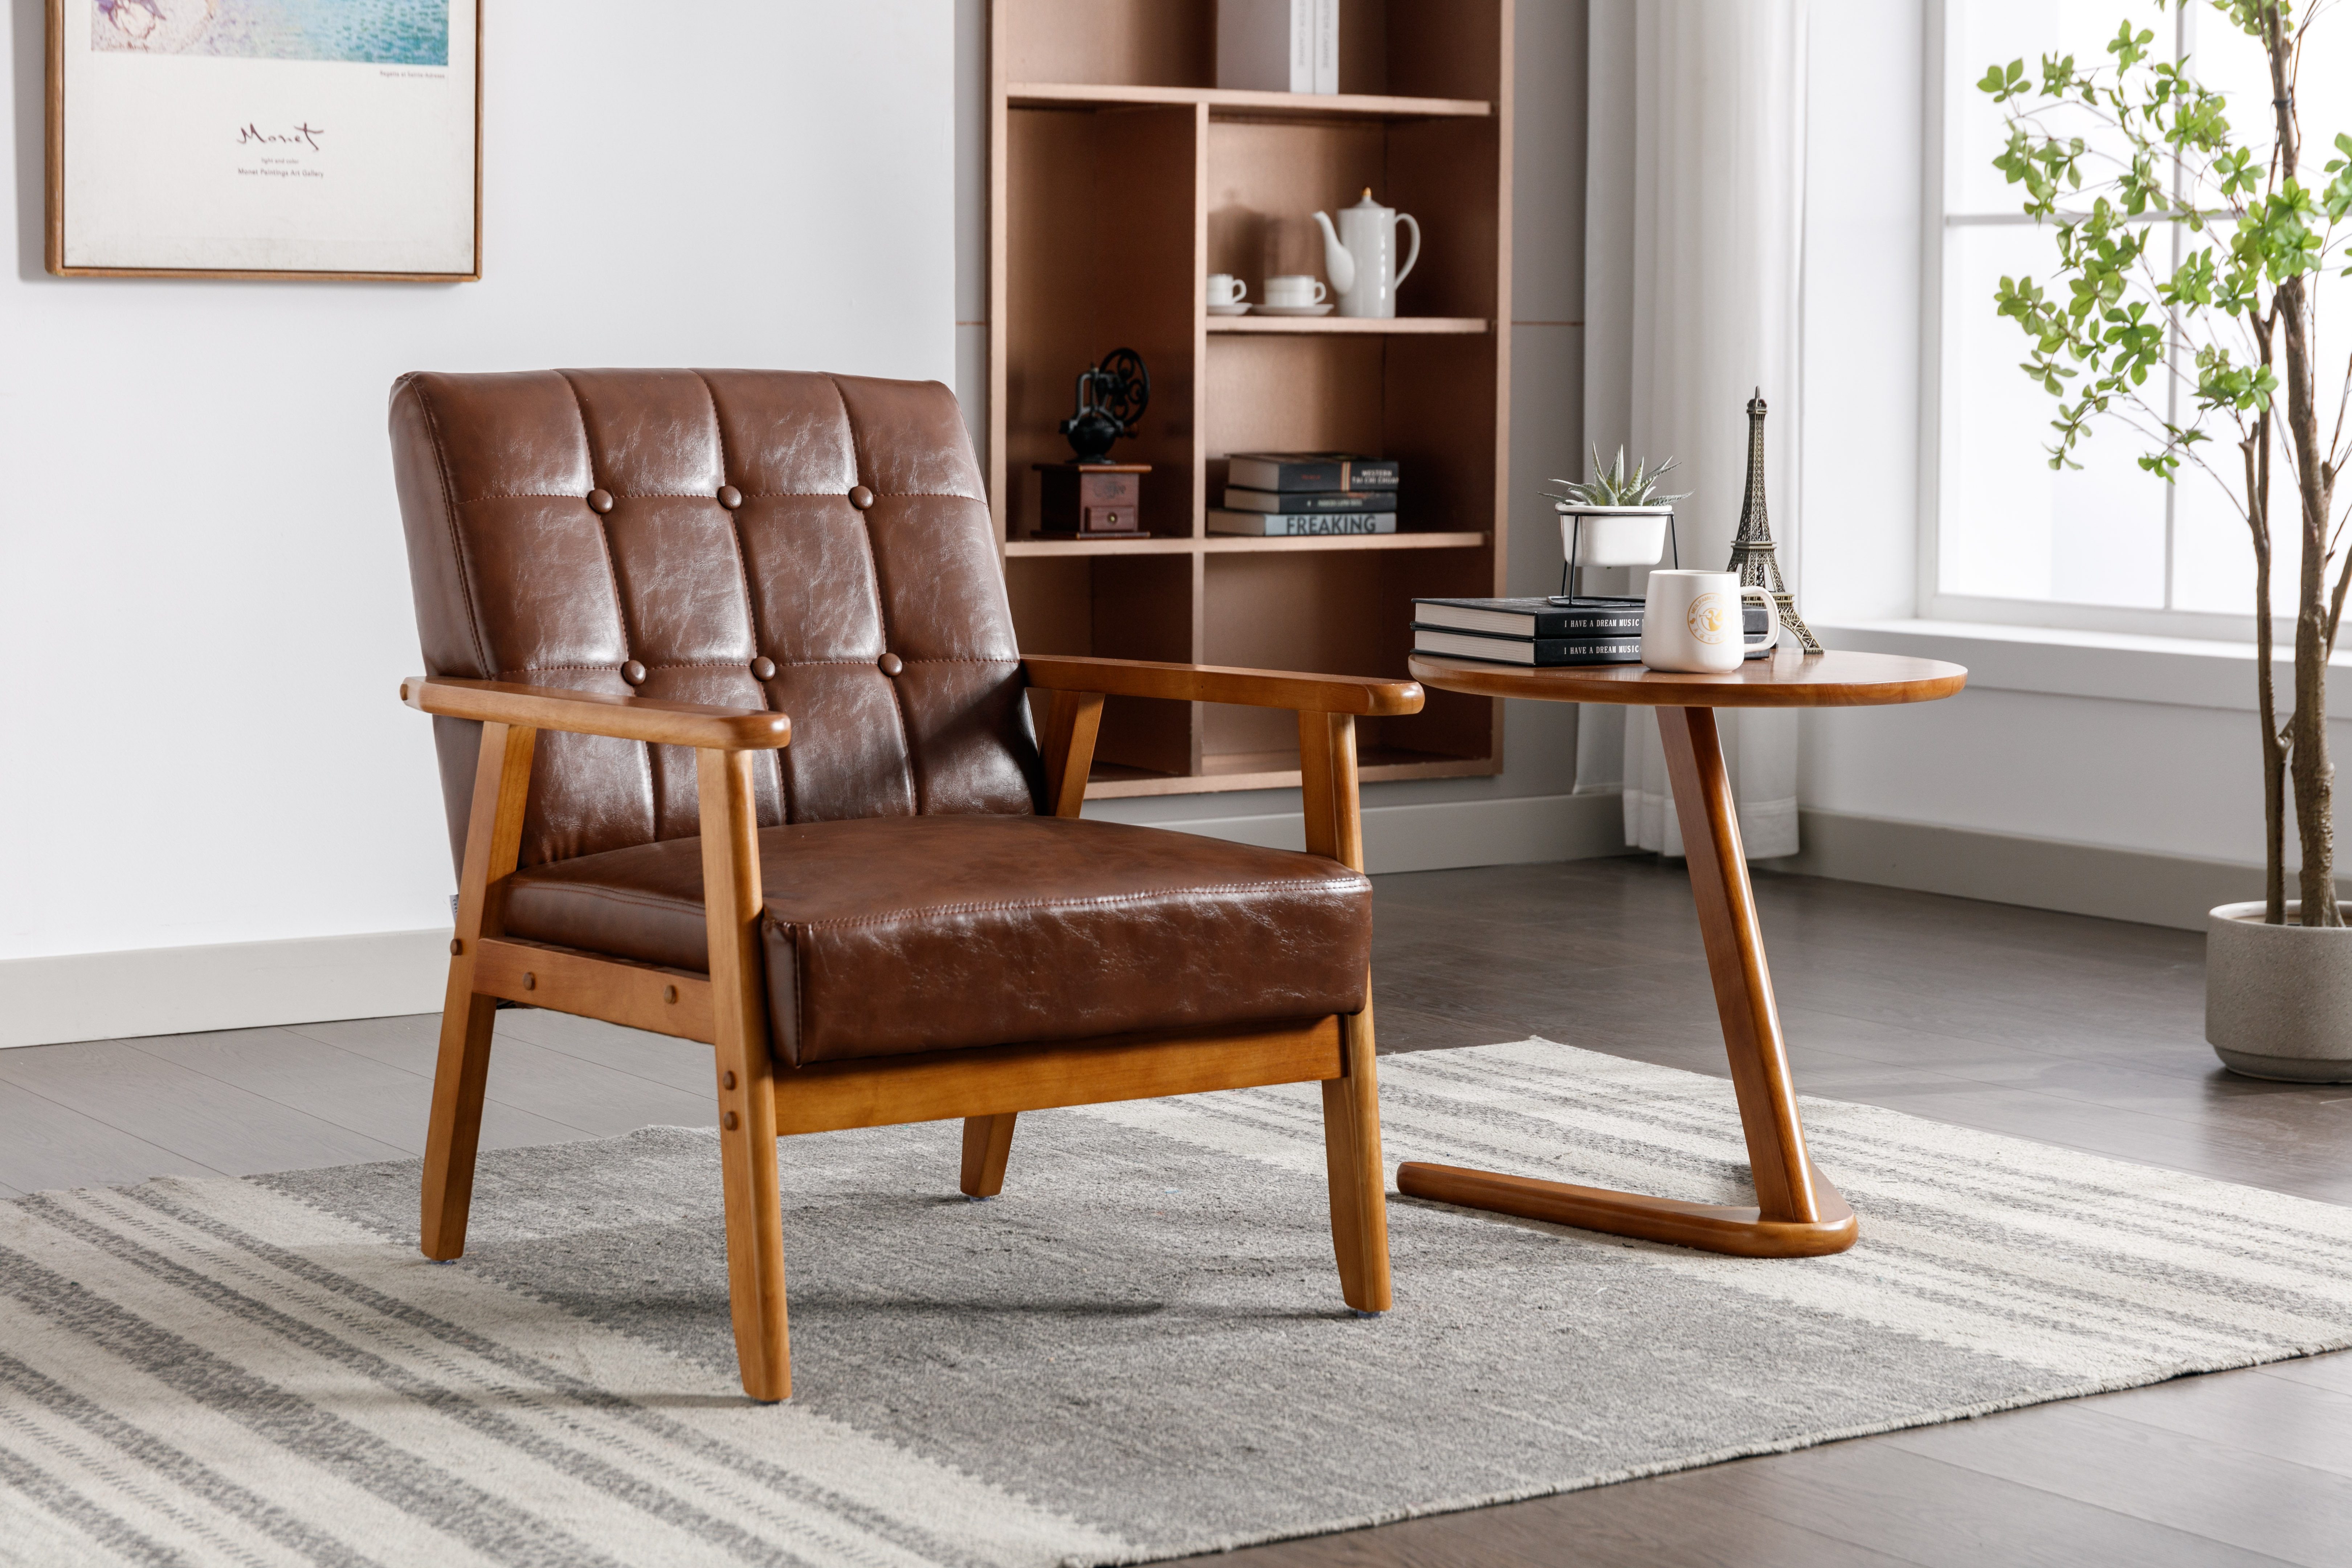 OKWISH Loungesessel Relaxsessel mit Massivholz-Armlehnen und -Füßen (Mid-Century Modern Akzentstuhl), für Wohnzimmer Schlafzimmer Studio-Stuhl